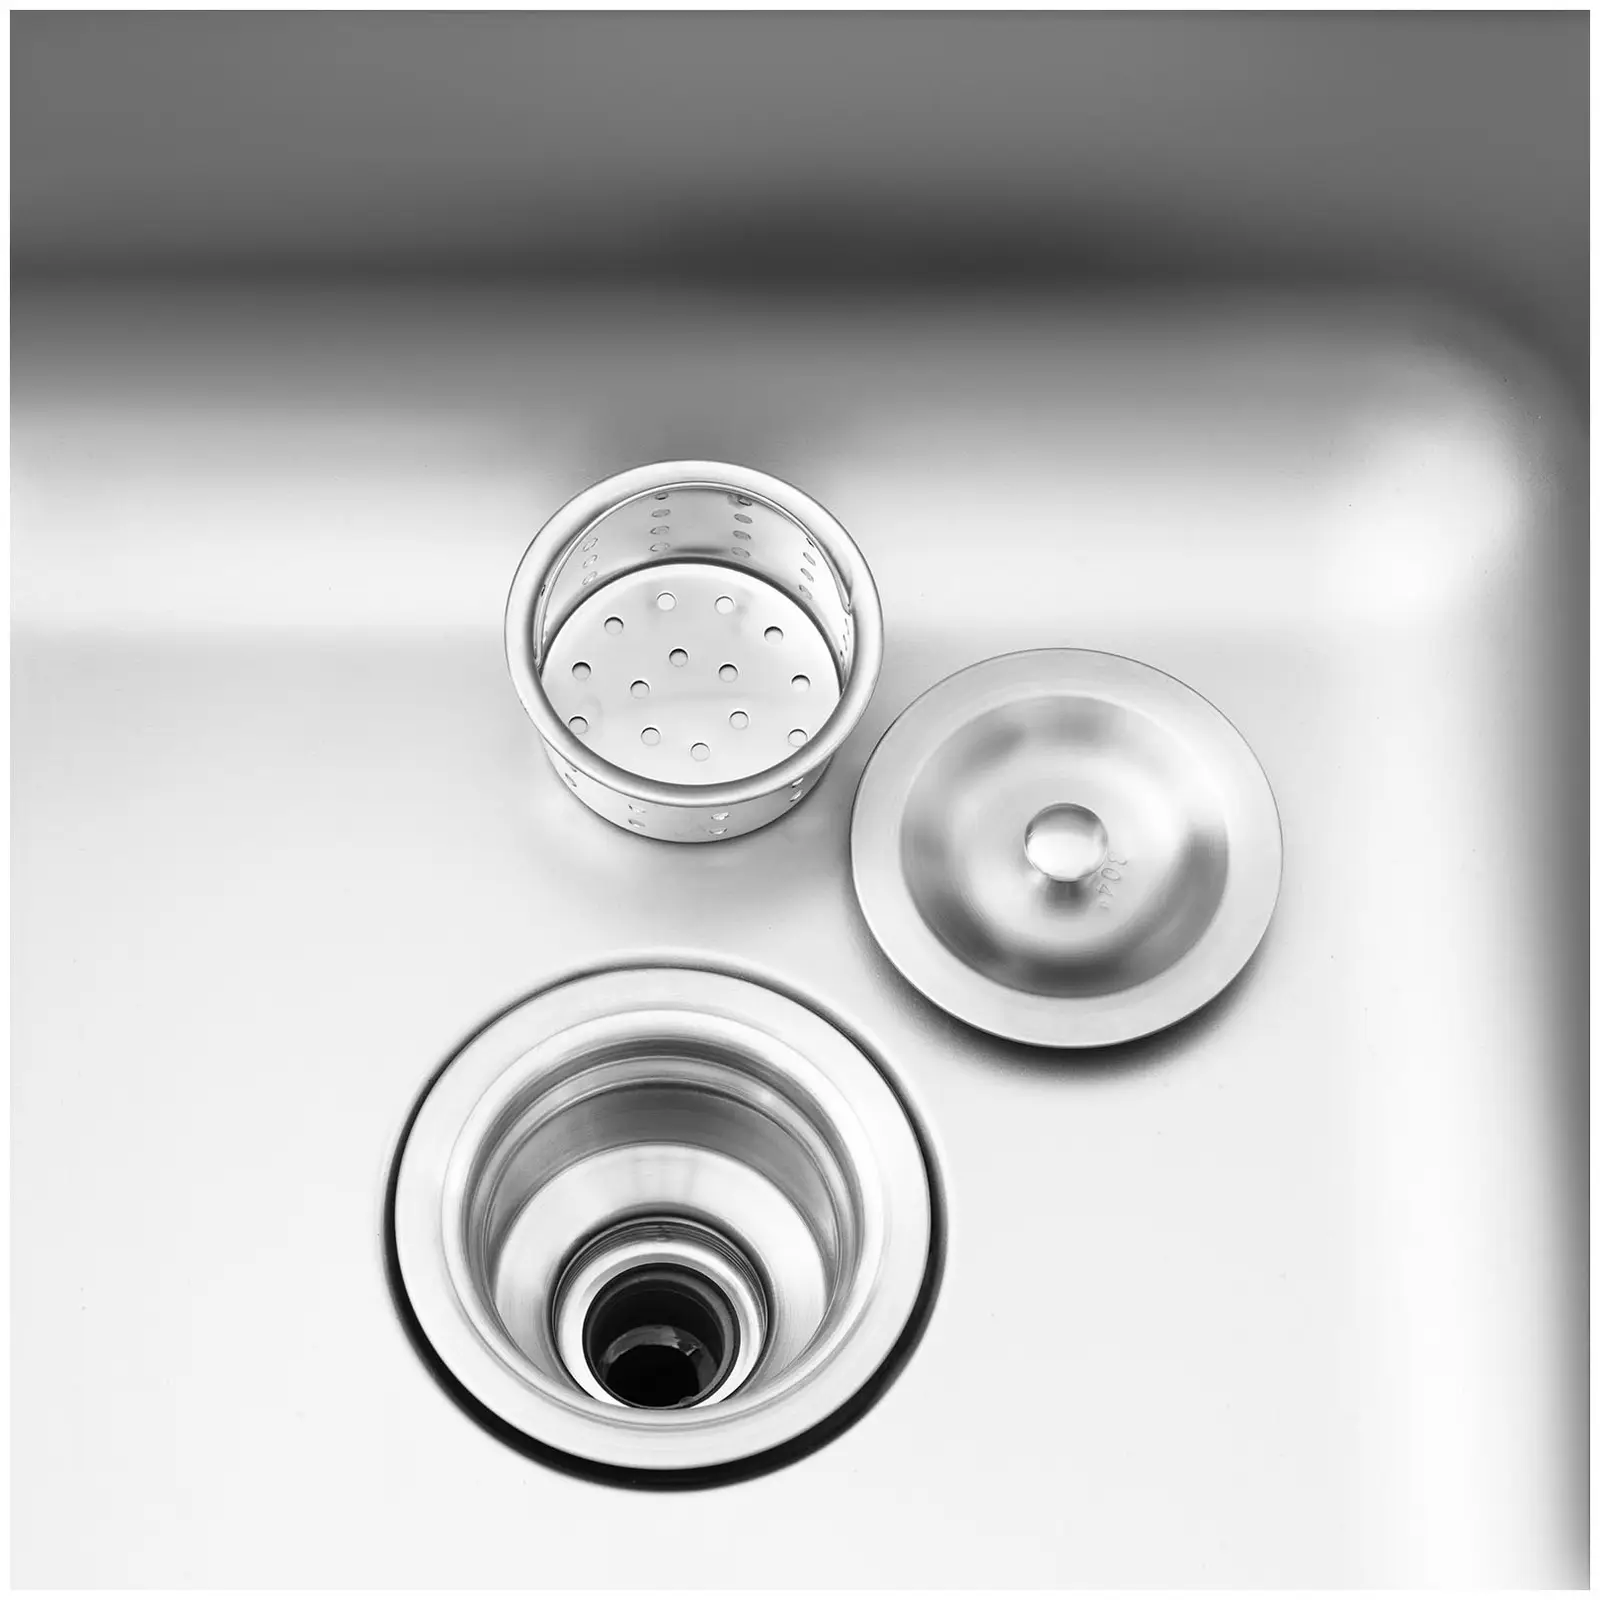 Komercialno kuhinjsko korito - 1 umivalnik - Royal Catering - Iz nerjavečega jekla - 500 x 400 x 240 mm